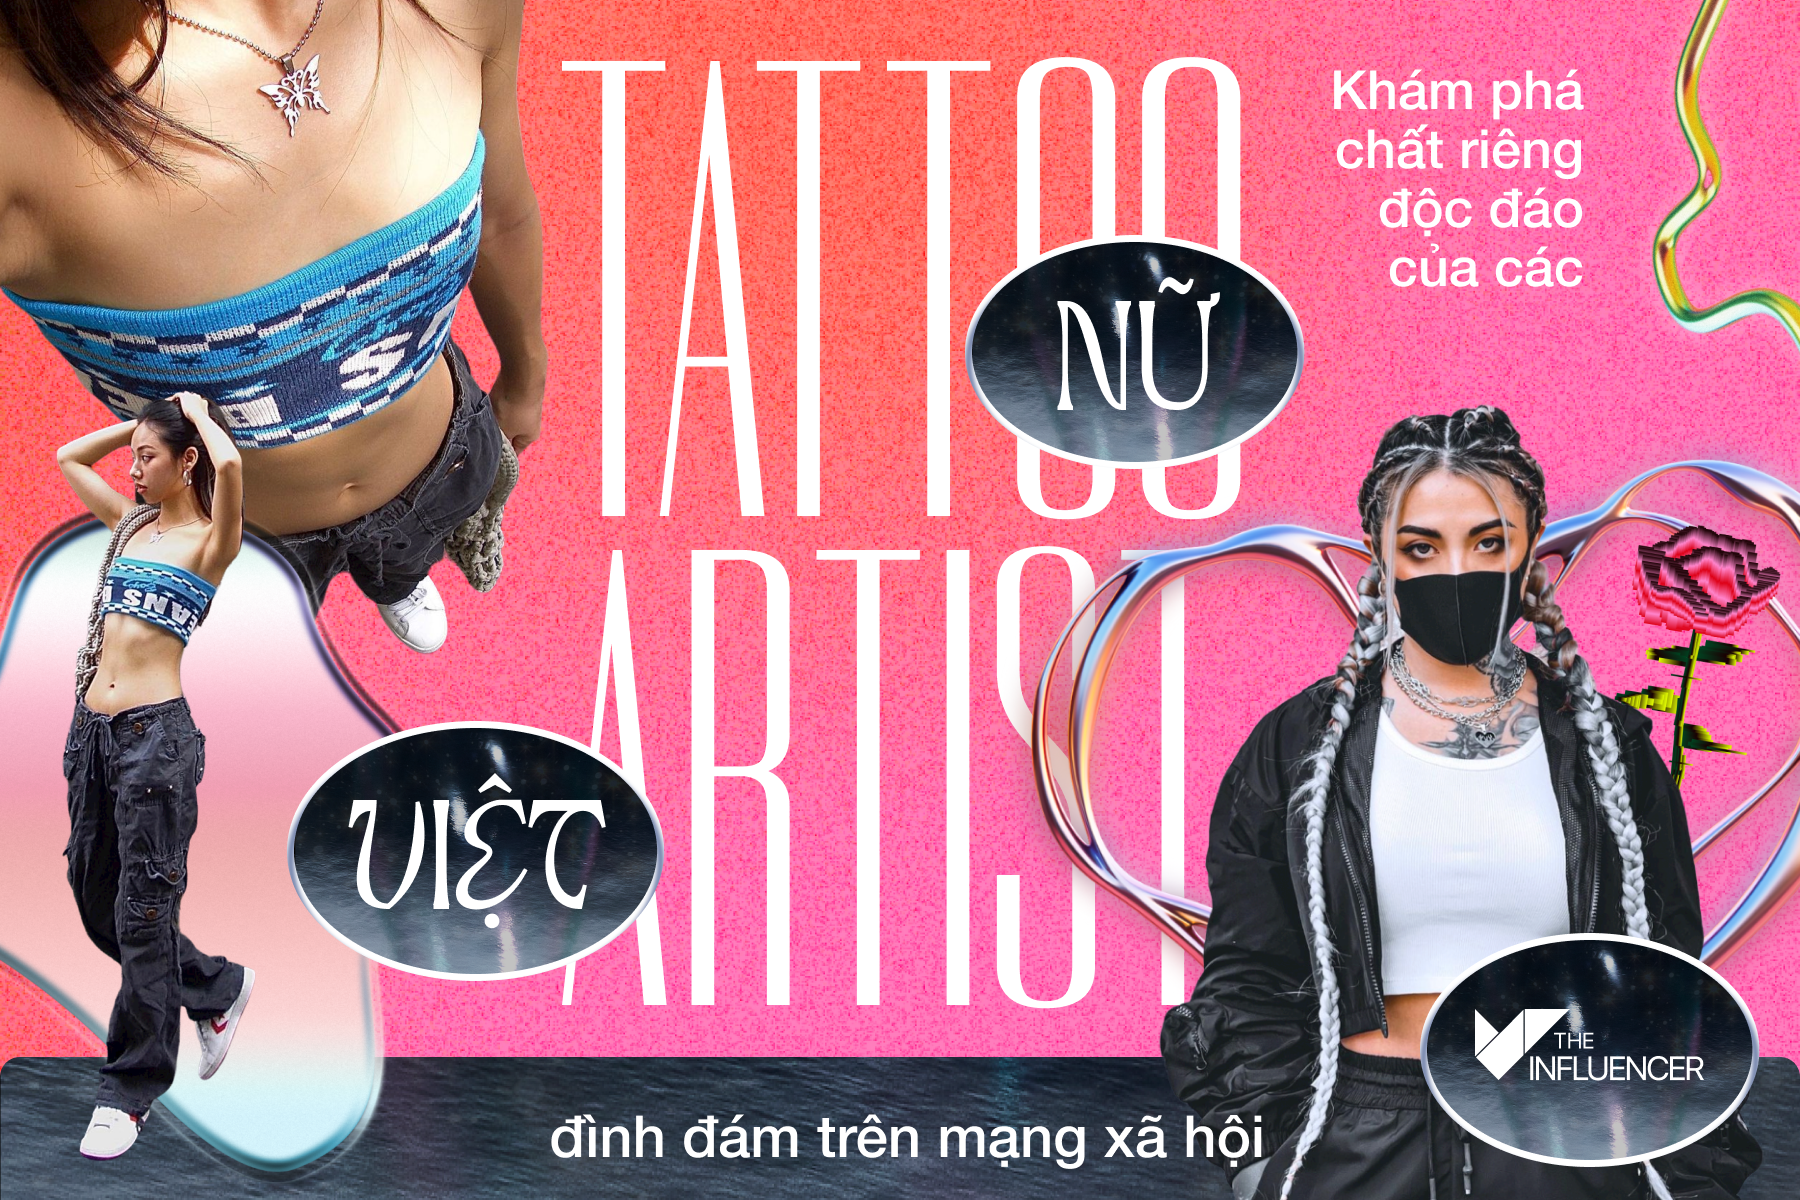 #TopList: Khám phá chất riêng độc đáo của các Tattoo Artist Việt đình đám trên mạng xã hội